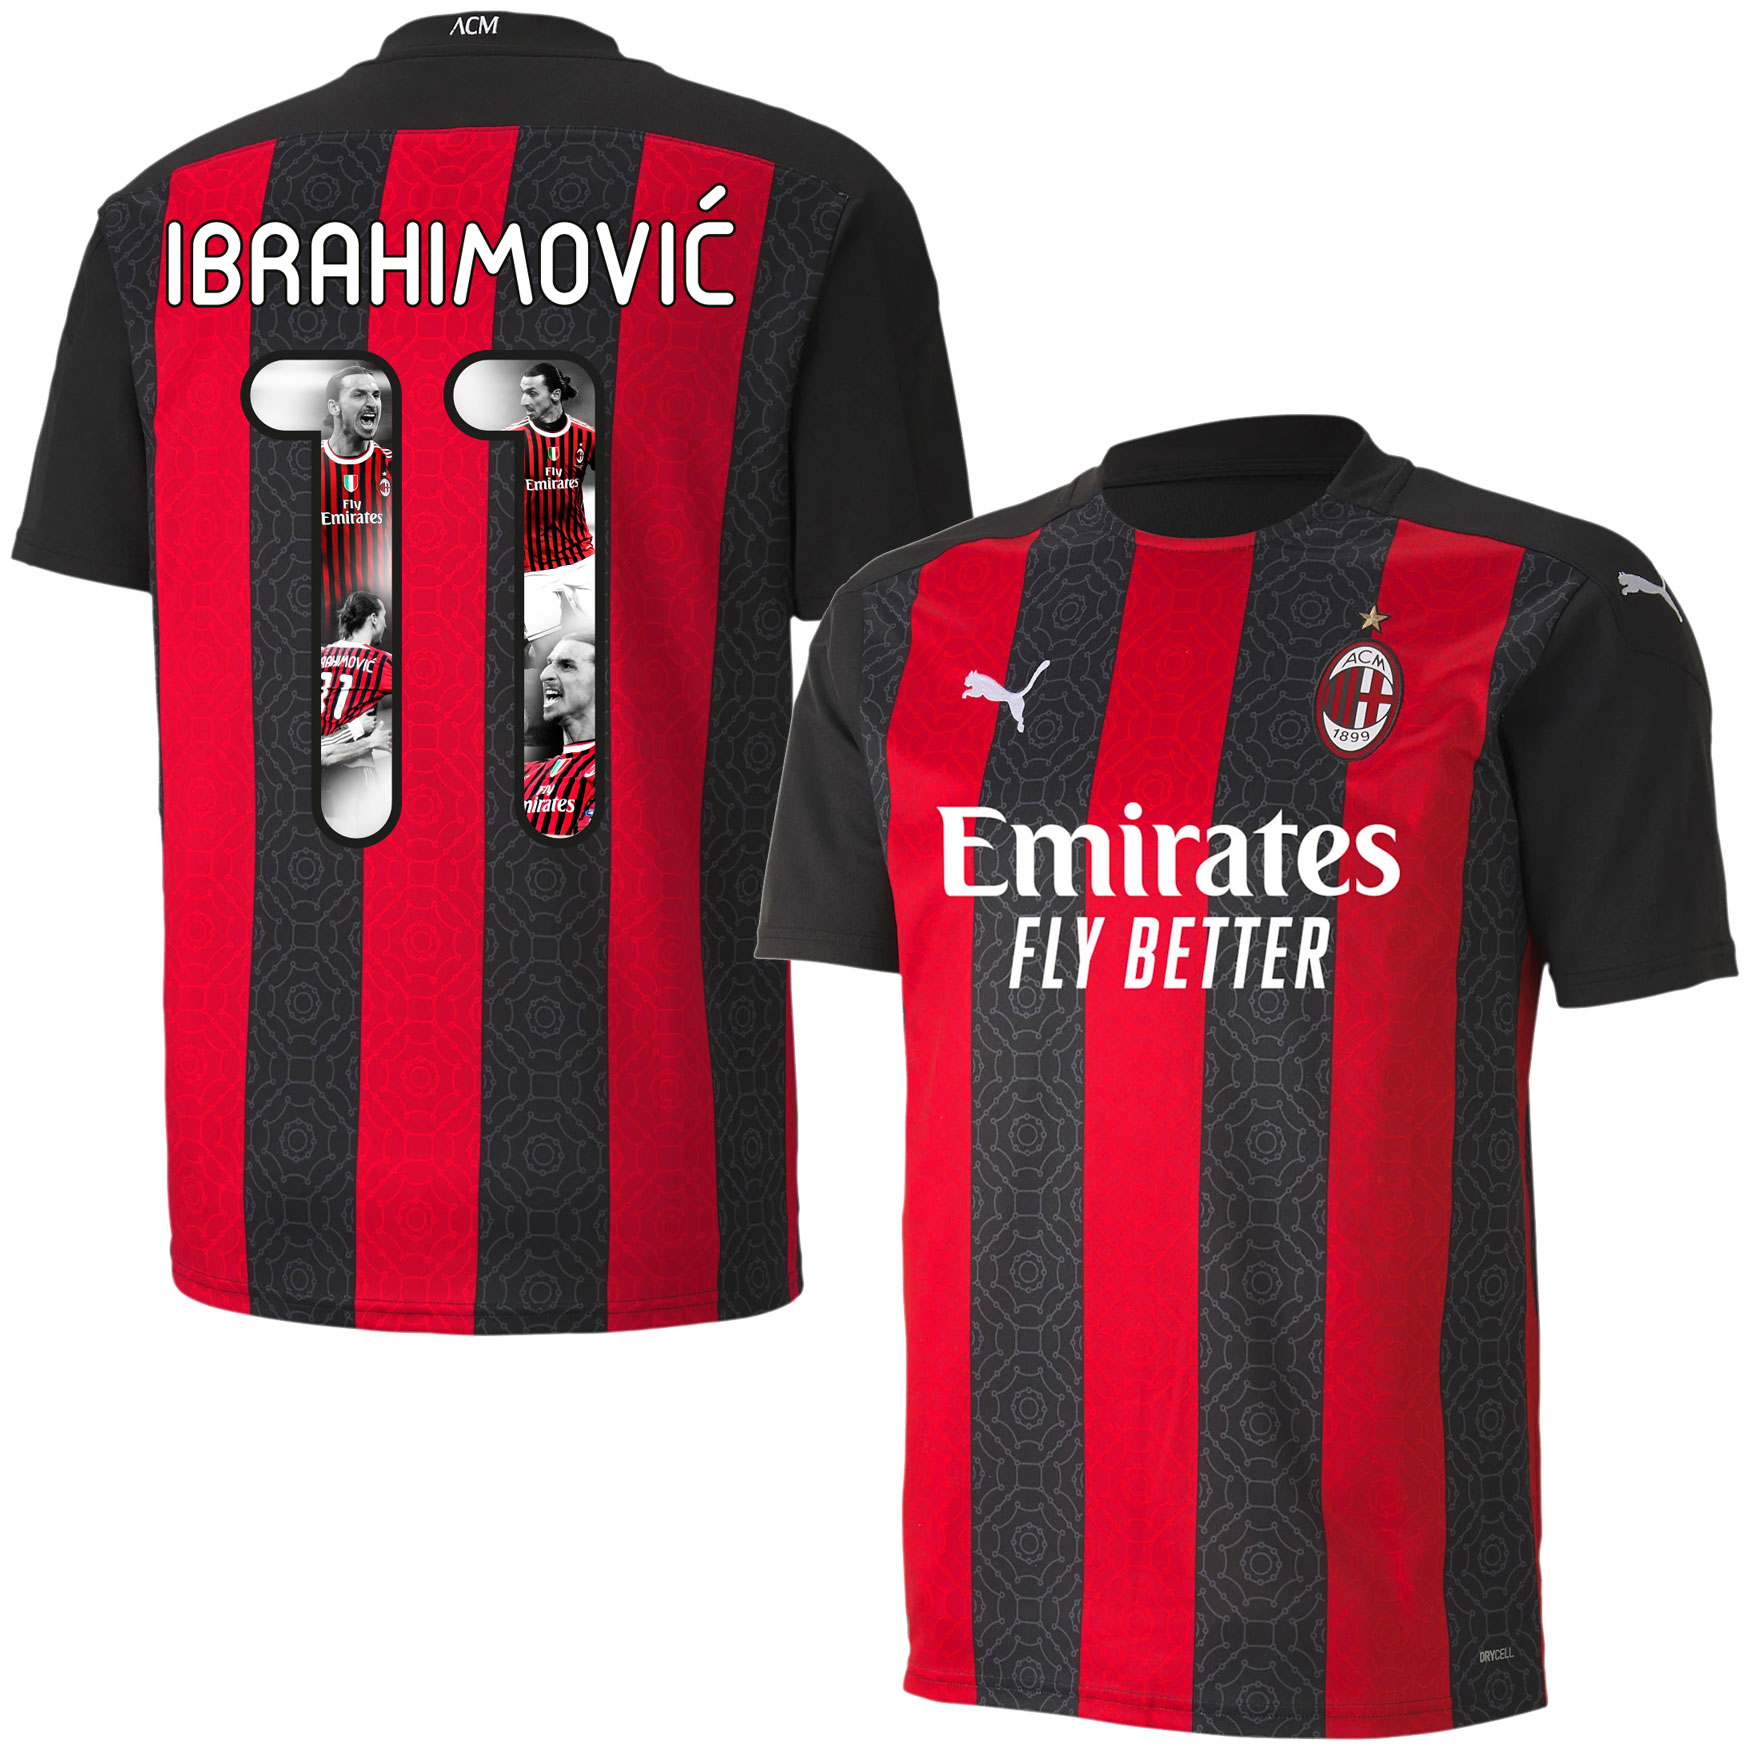 AC Milan Shirt Thuis 2020-2021 + Ibrahimovic 11 (Gallery Style)